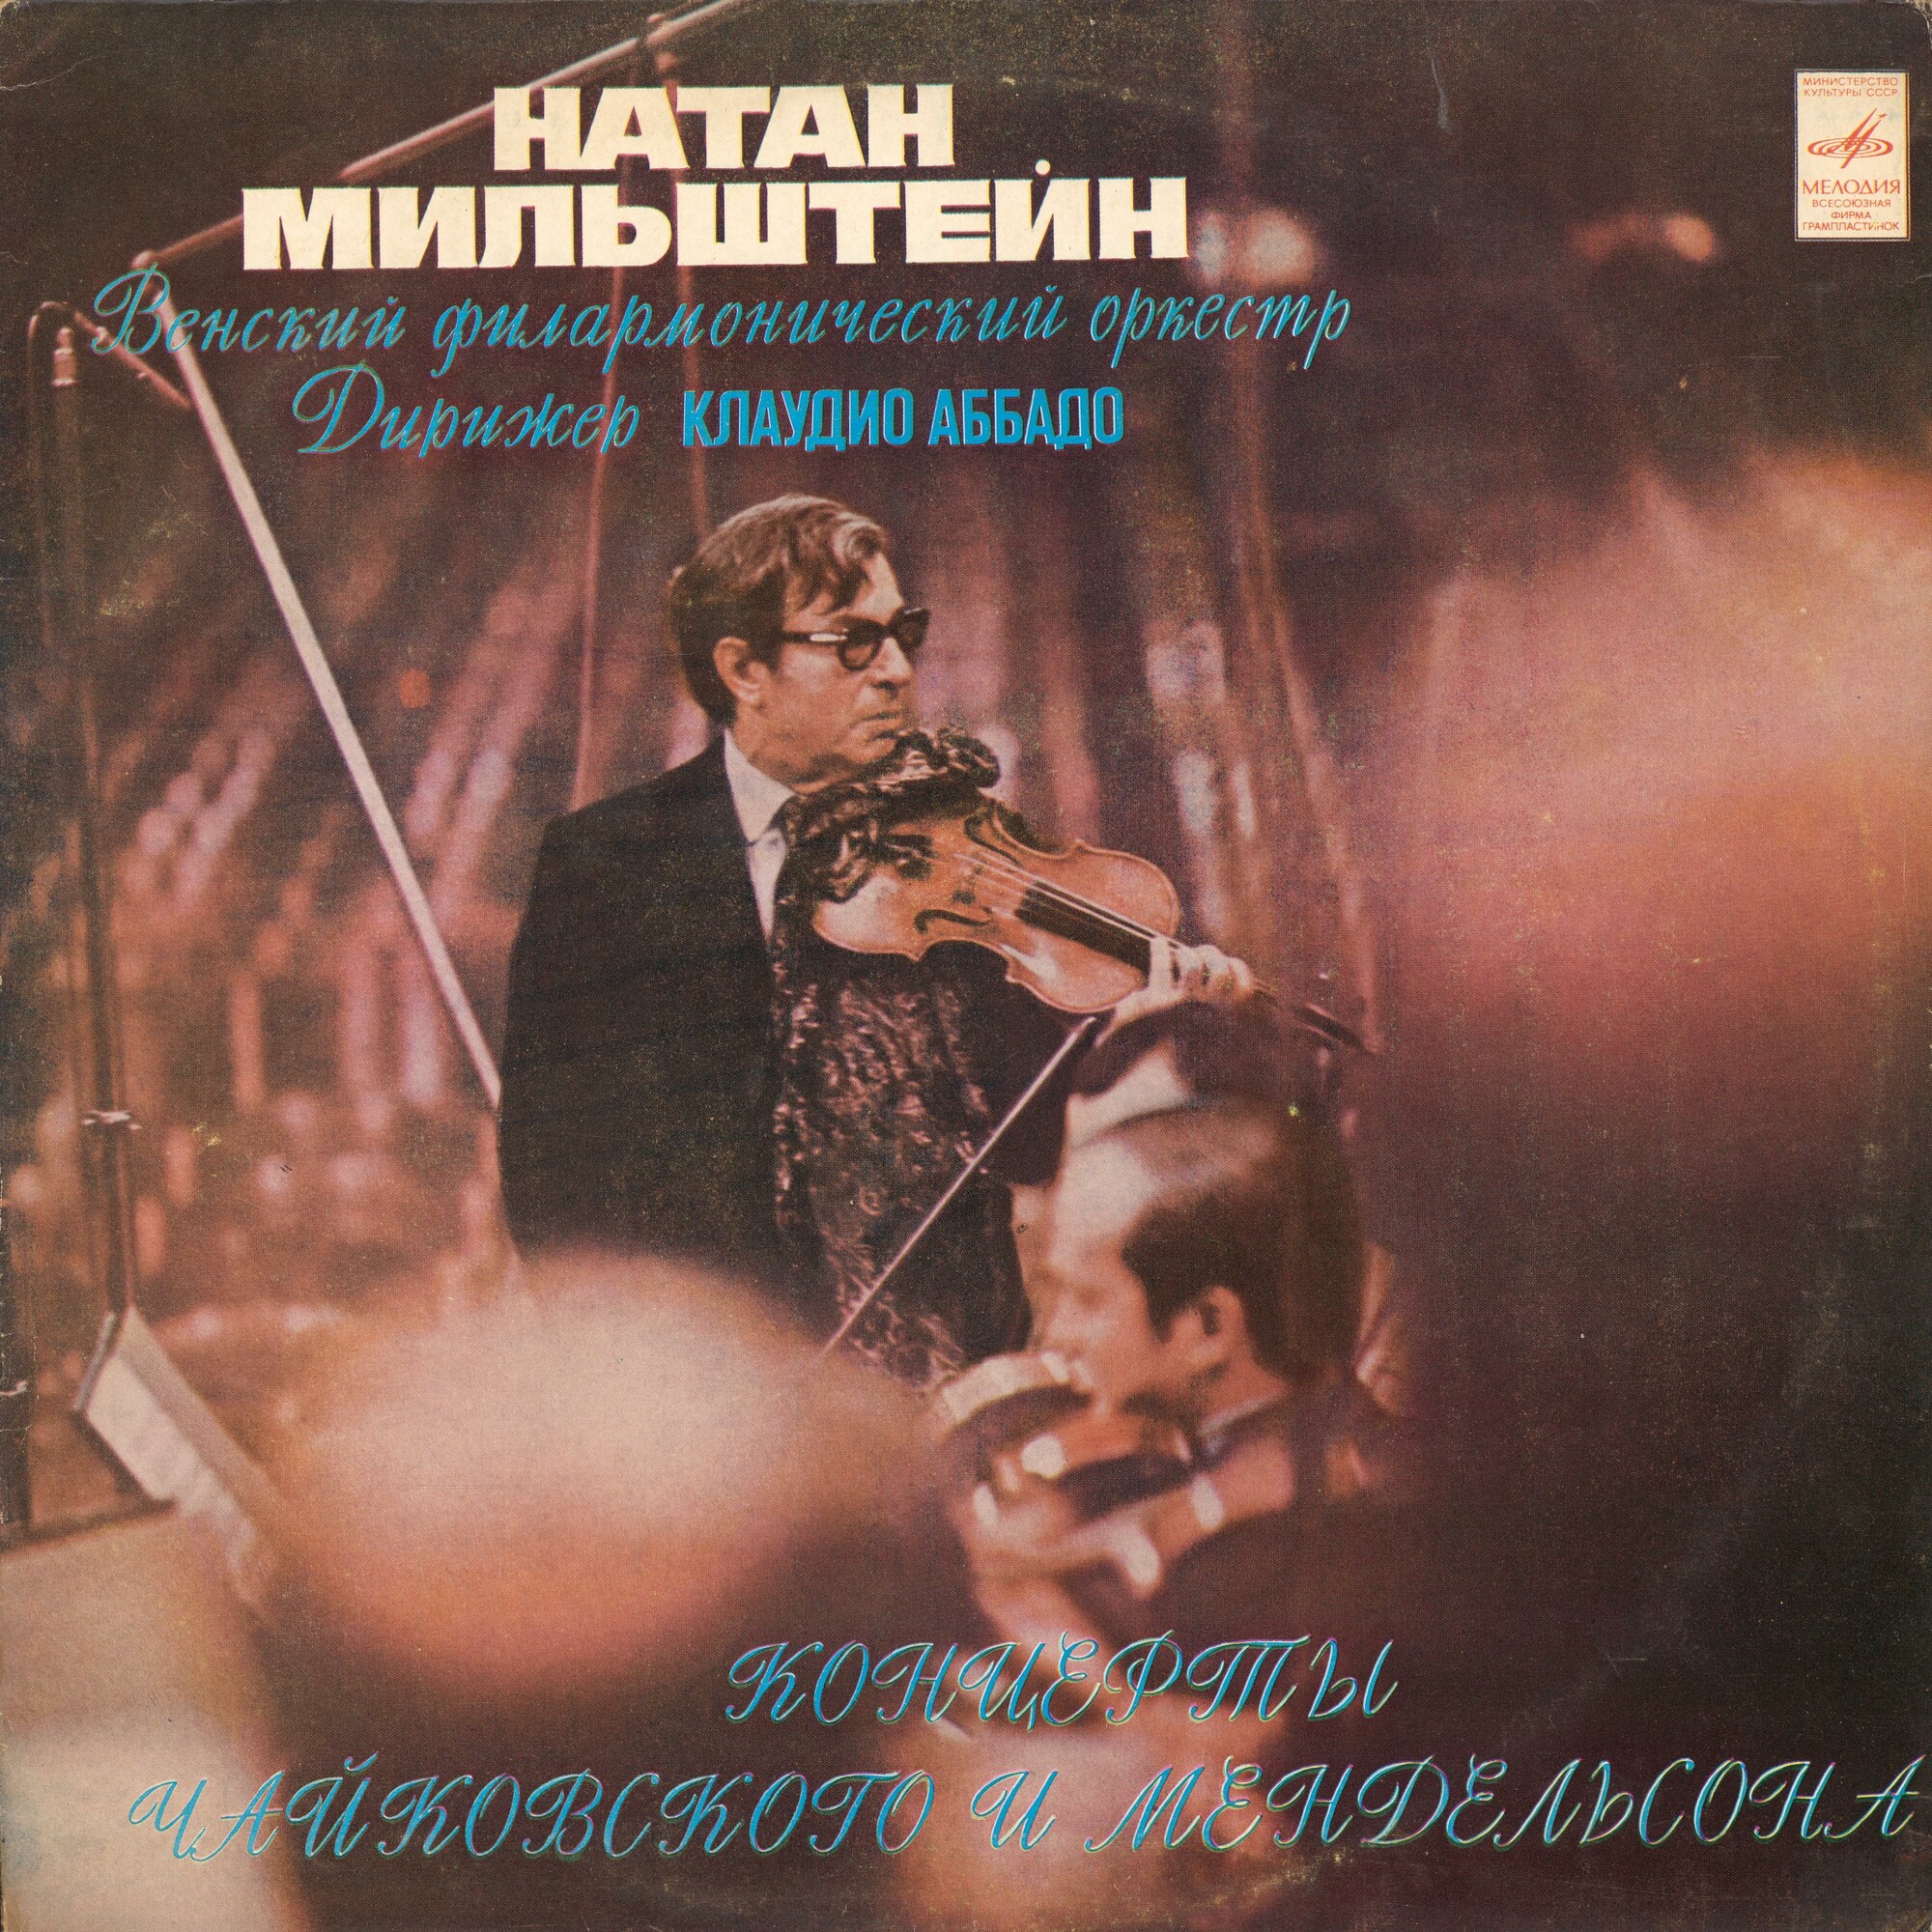 Натан МИЛЬШТЕЙН, Венский филармонический оркестр, дирижер Клаудио Аббадо